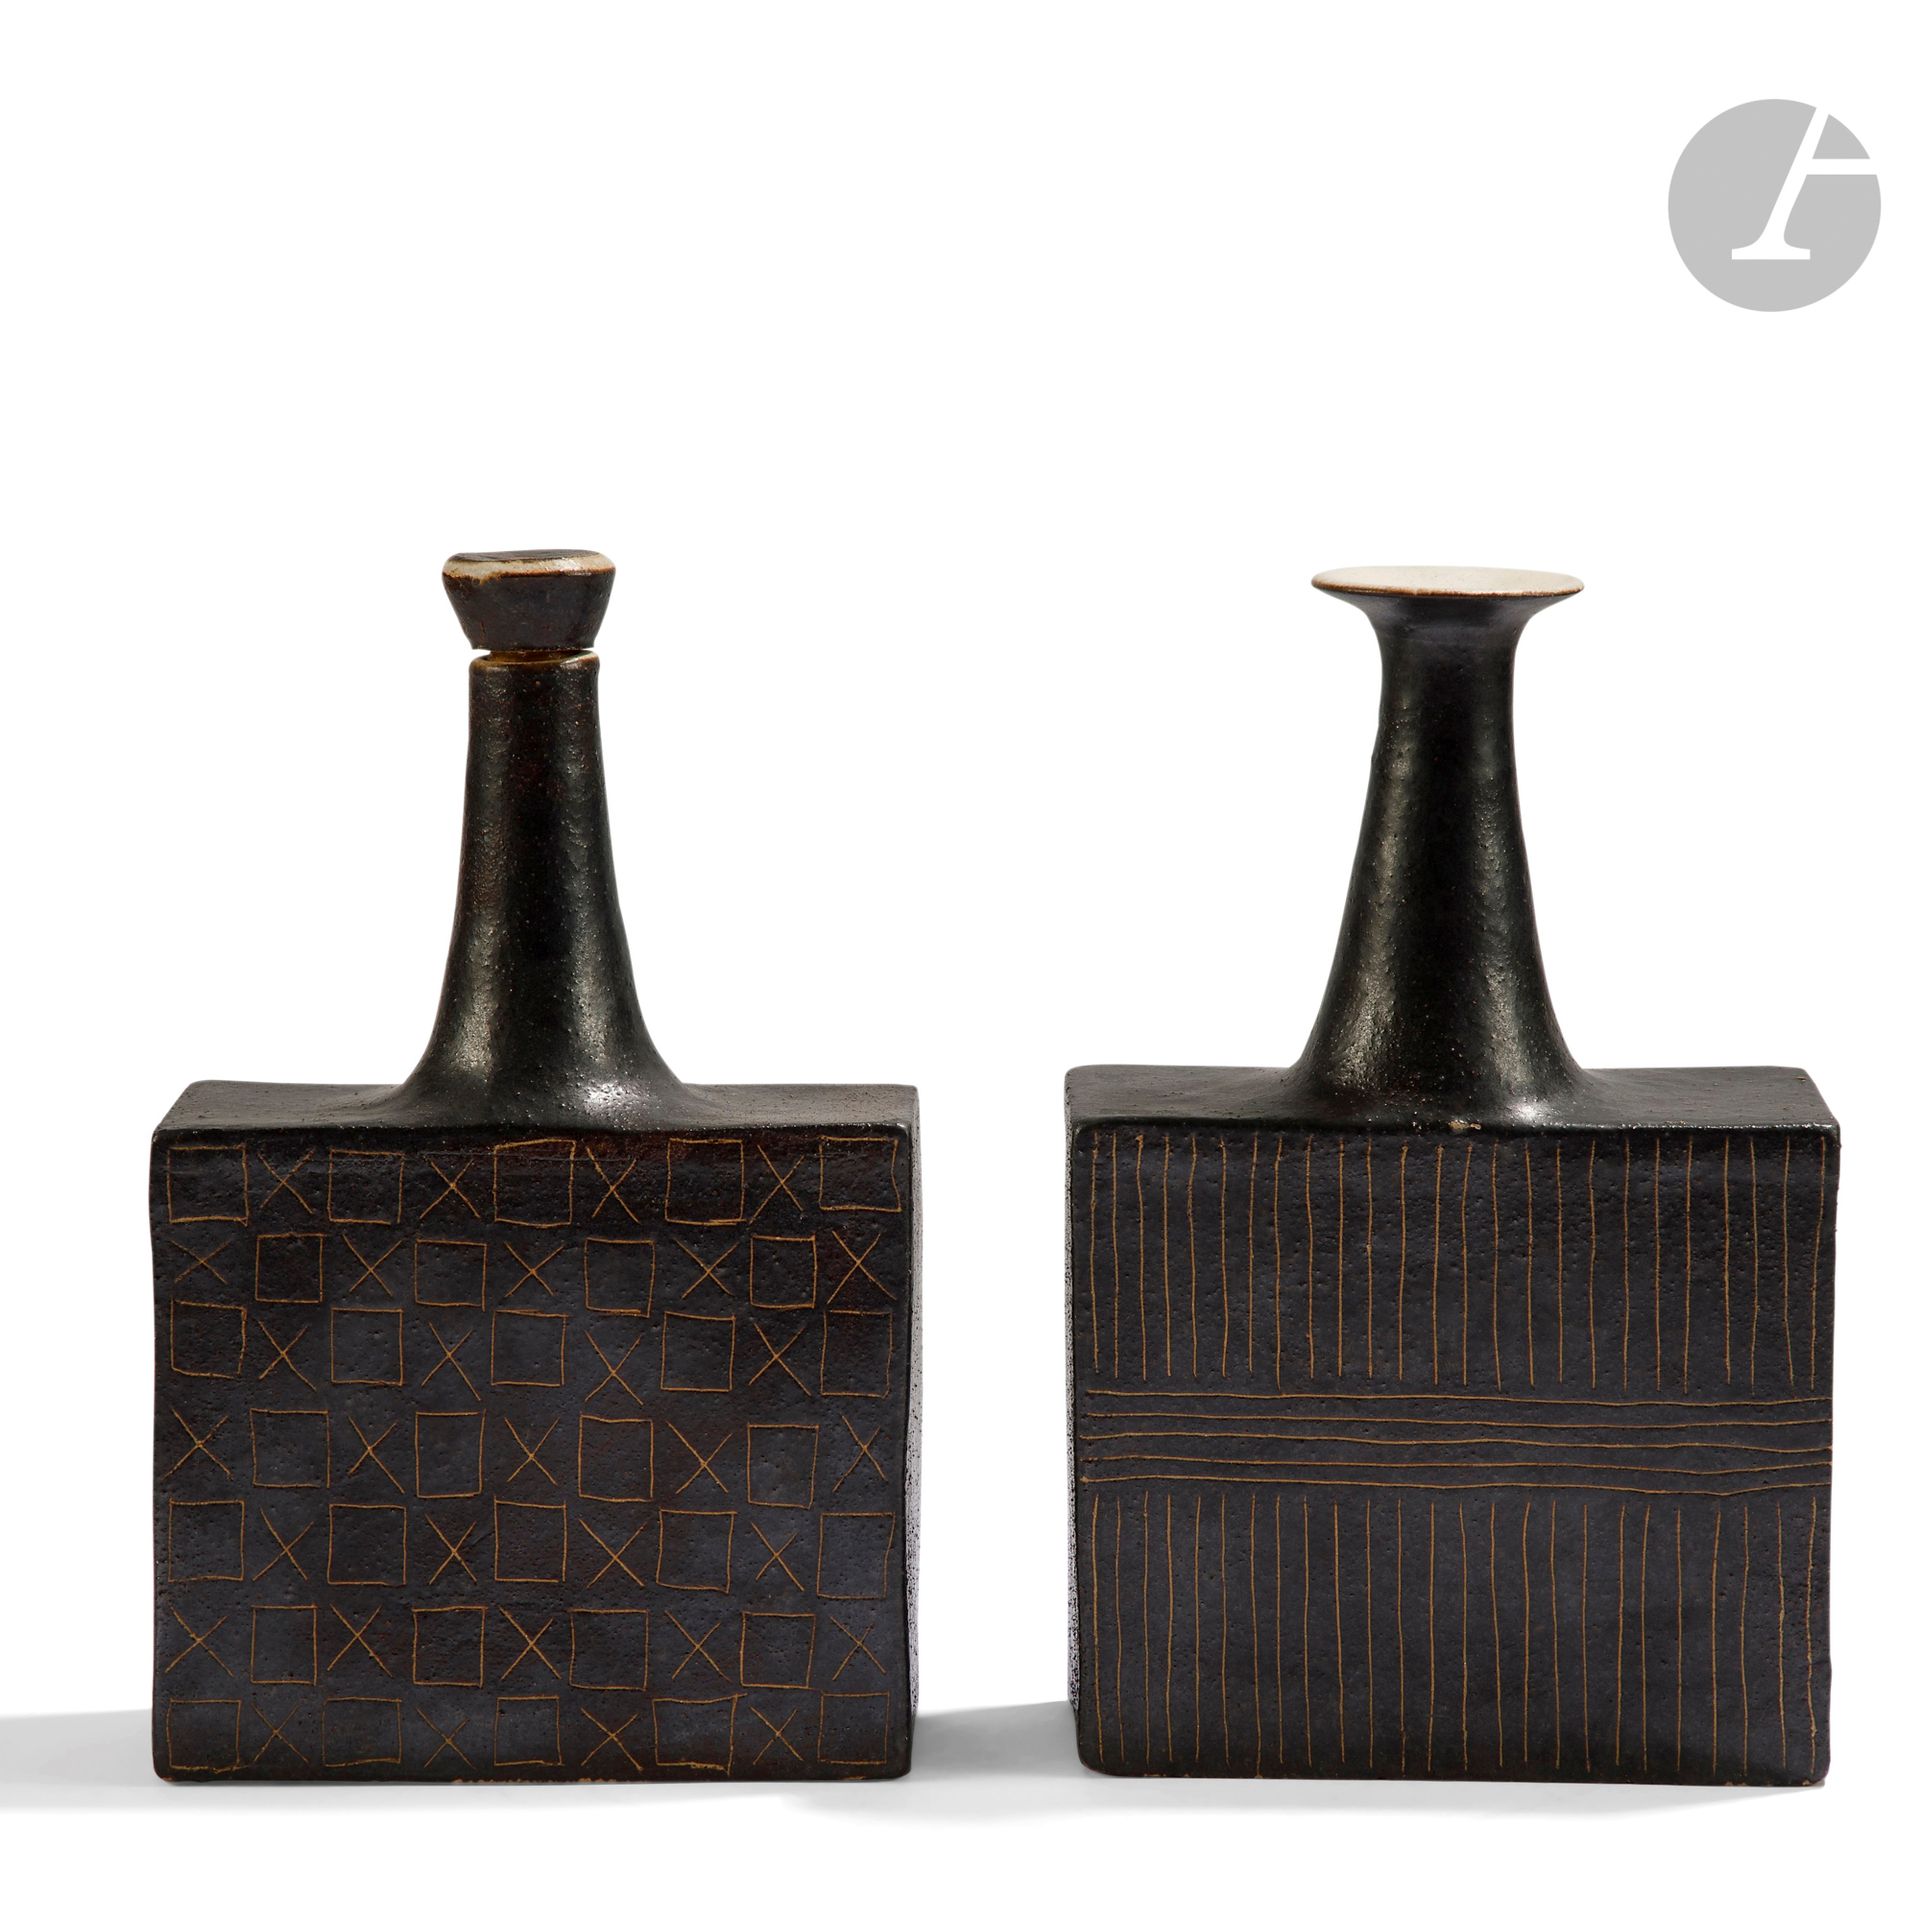 Null bruno gambone (1936-2021) - 2件作品
几何刮擦物
一套由一个花瓶和一个瓶子组成的吊坠；瓶身是四角形，瓶颈是海盗形。釉面为深&hellip;